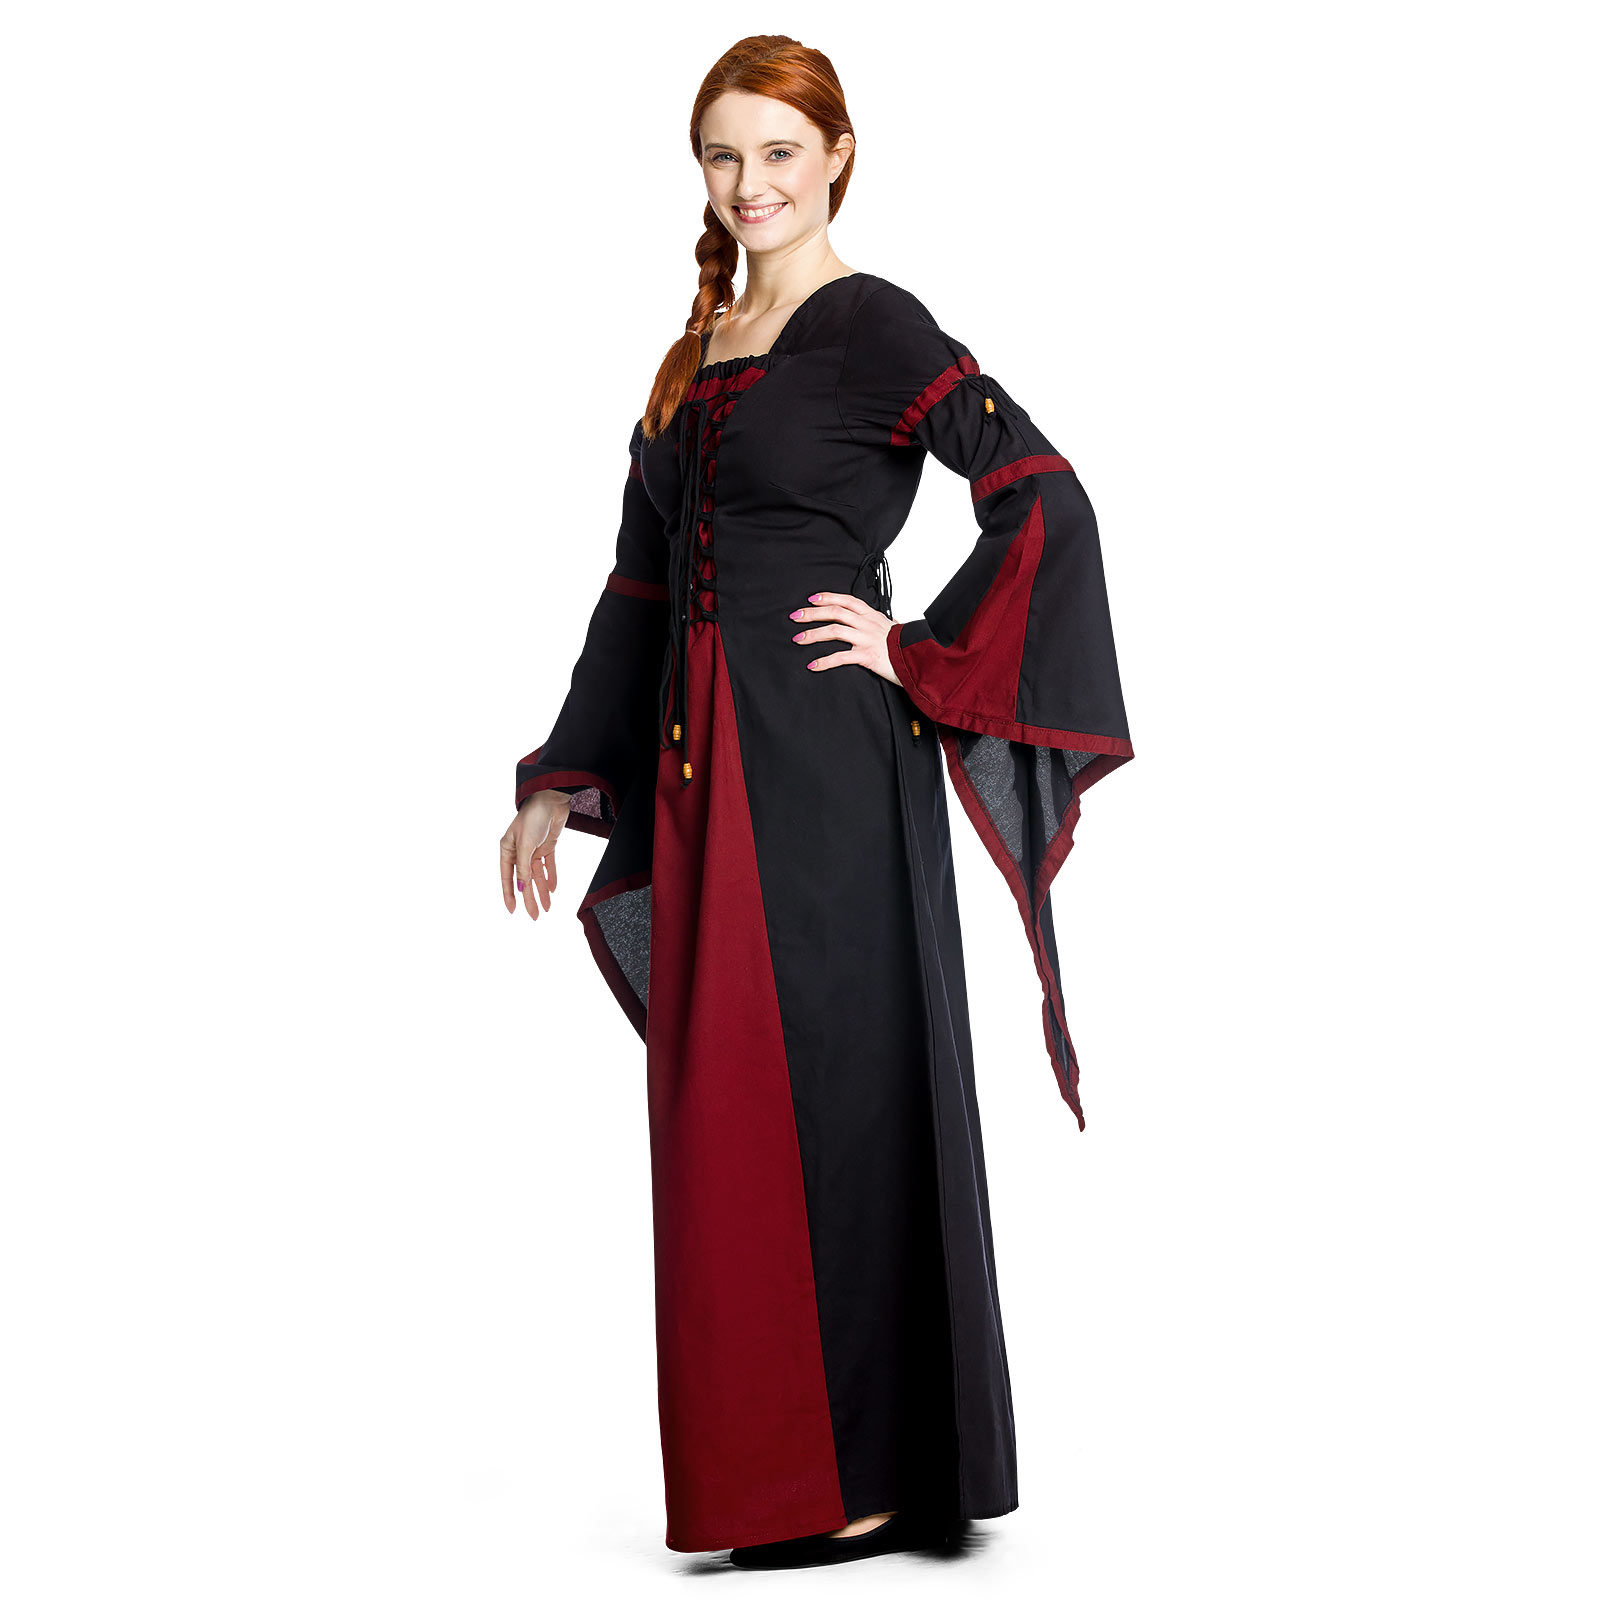 Elisa - Mittelalterkleid rot-schwarz